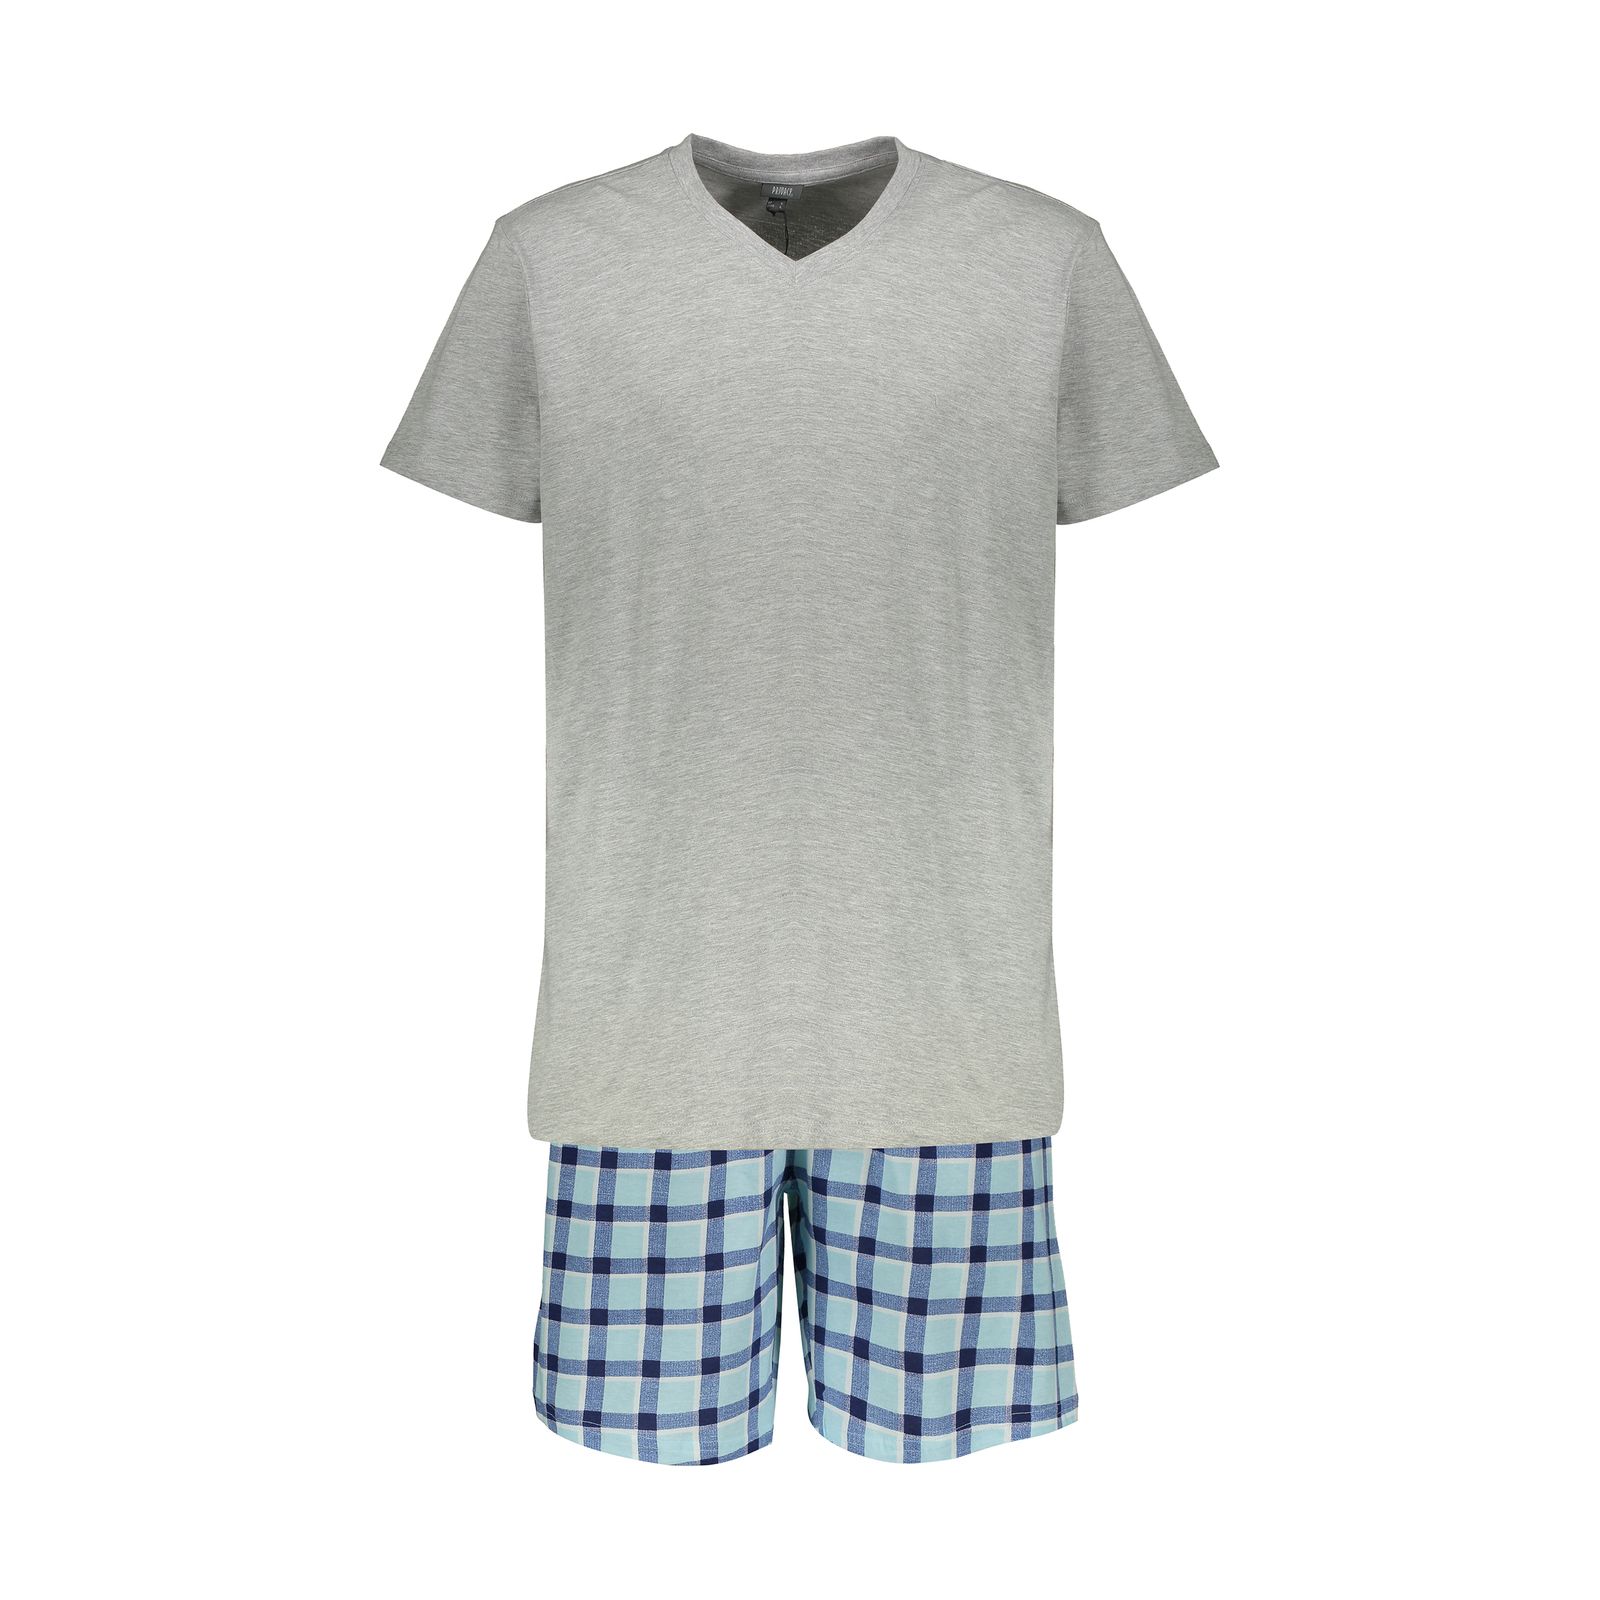 ست تی شرت و شلوارک مردانه یوپیم مدل 5143689-CS09 - آبی/طوسی - 1